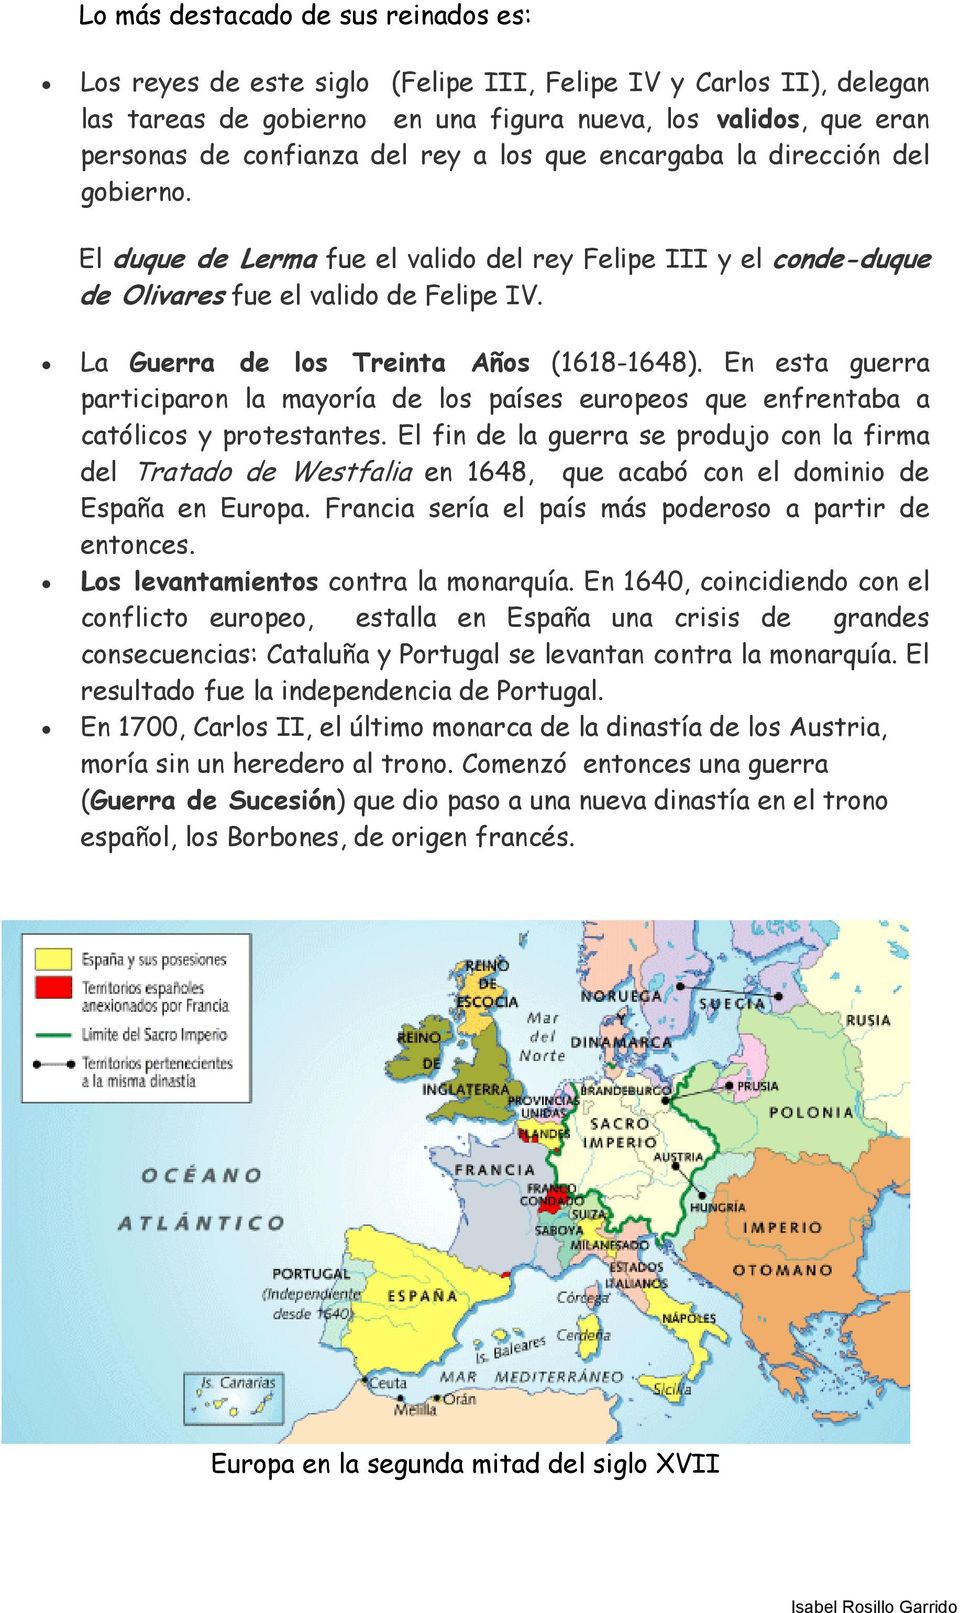 La Guerra de los Treinta Años (1618-1648). En esta guerra participaron la mayoría de los países europeos que enfrentaba a católicos y protestantes.